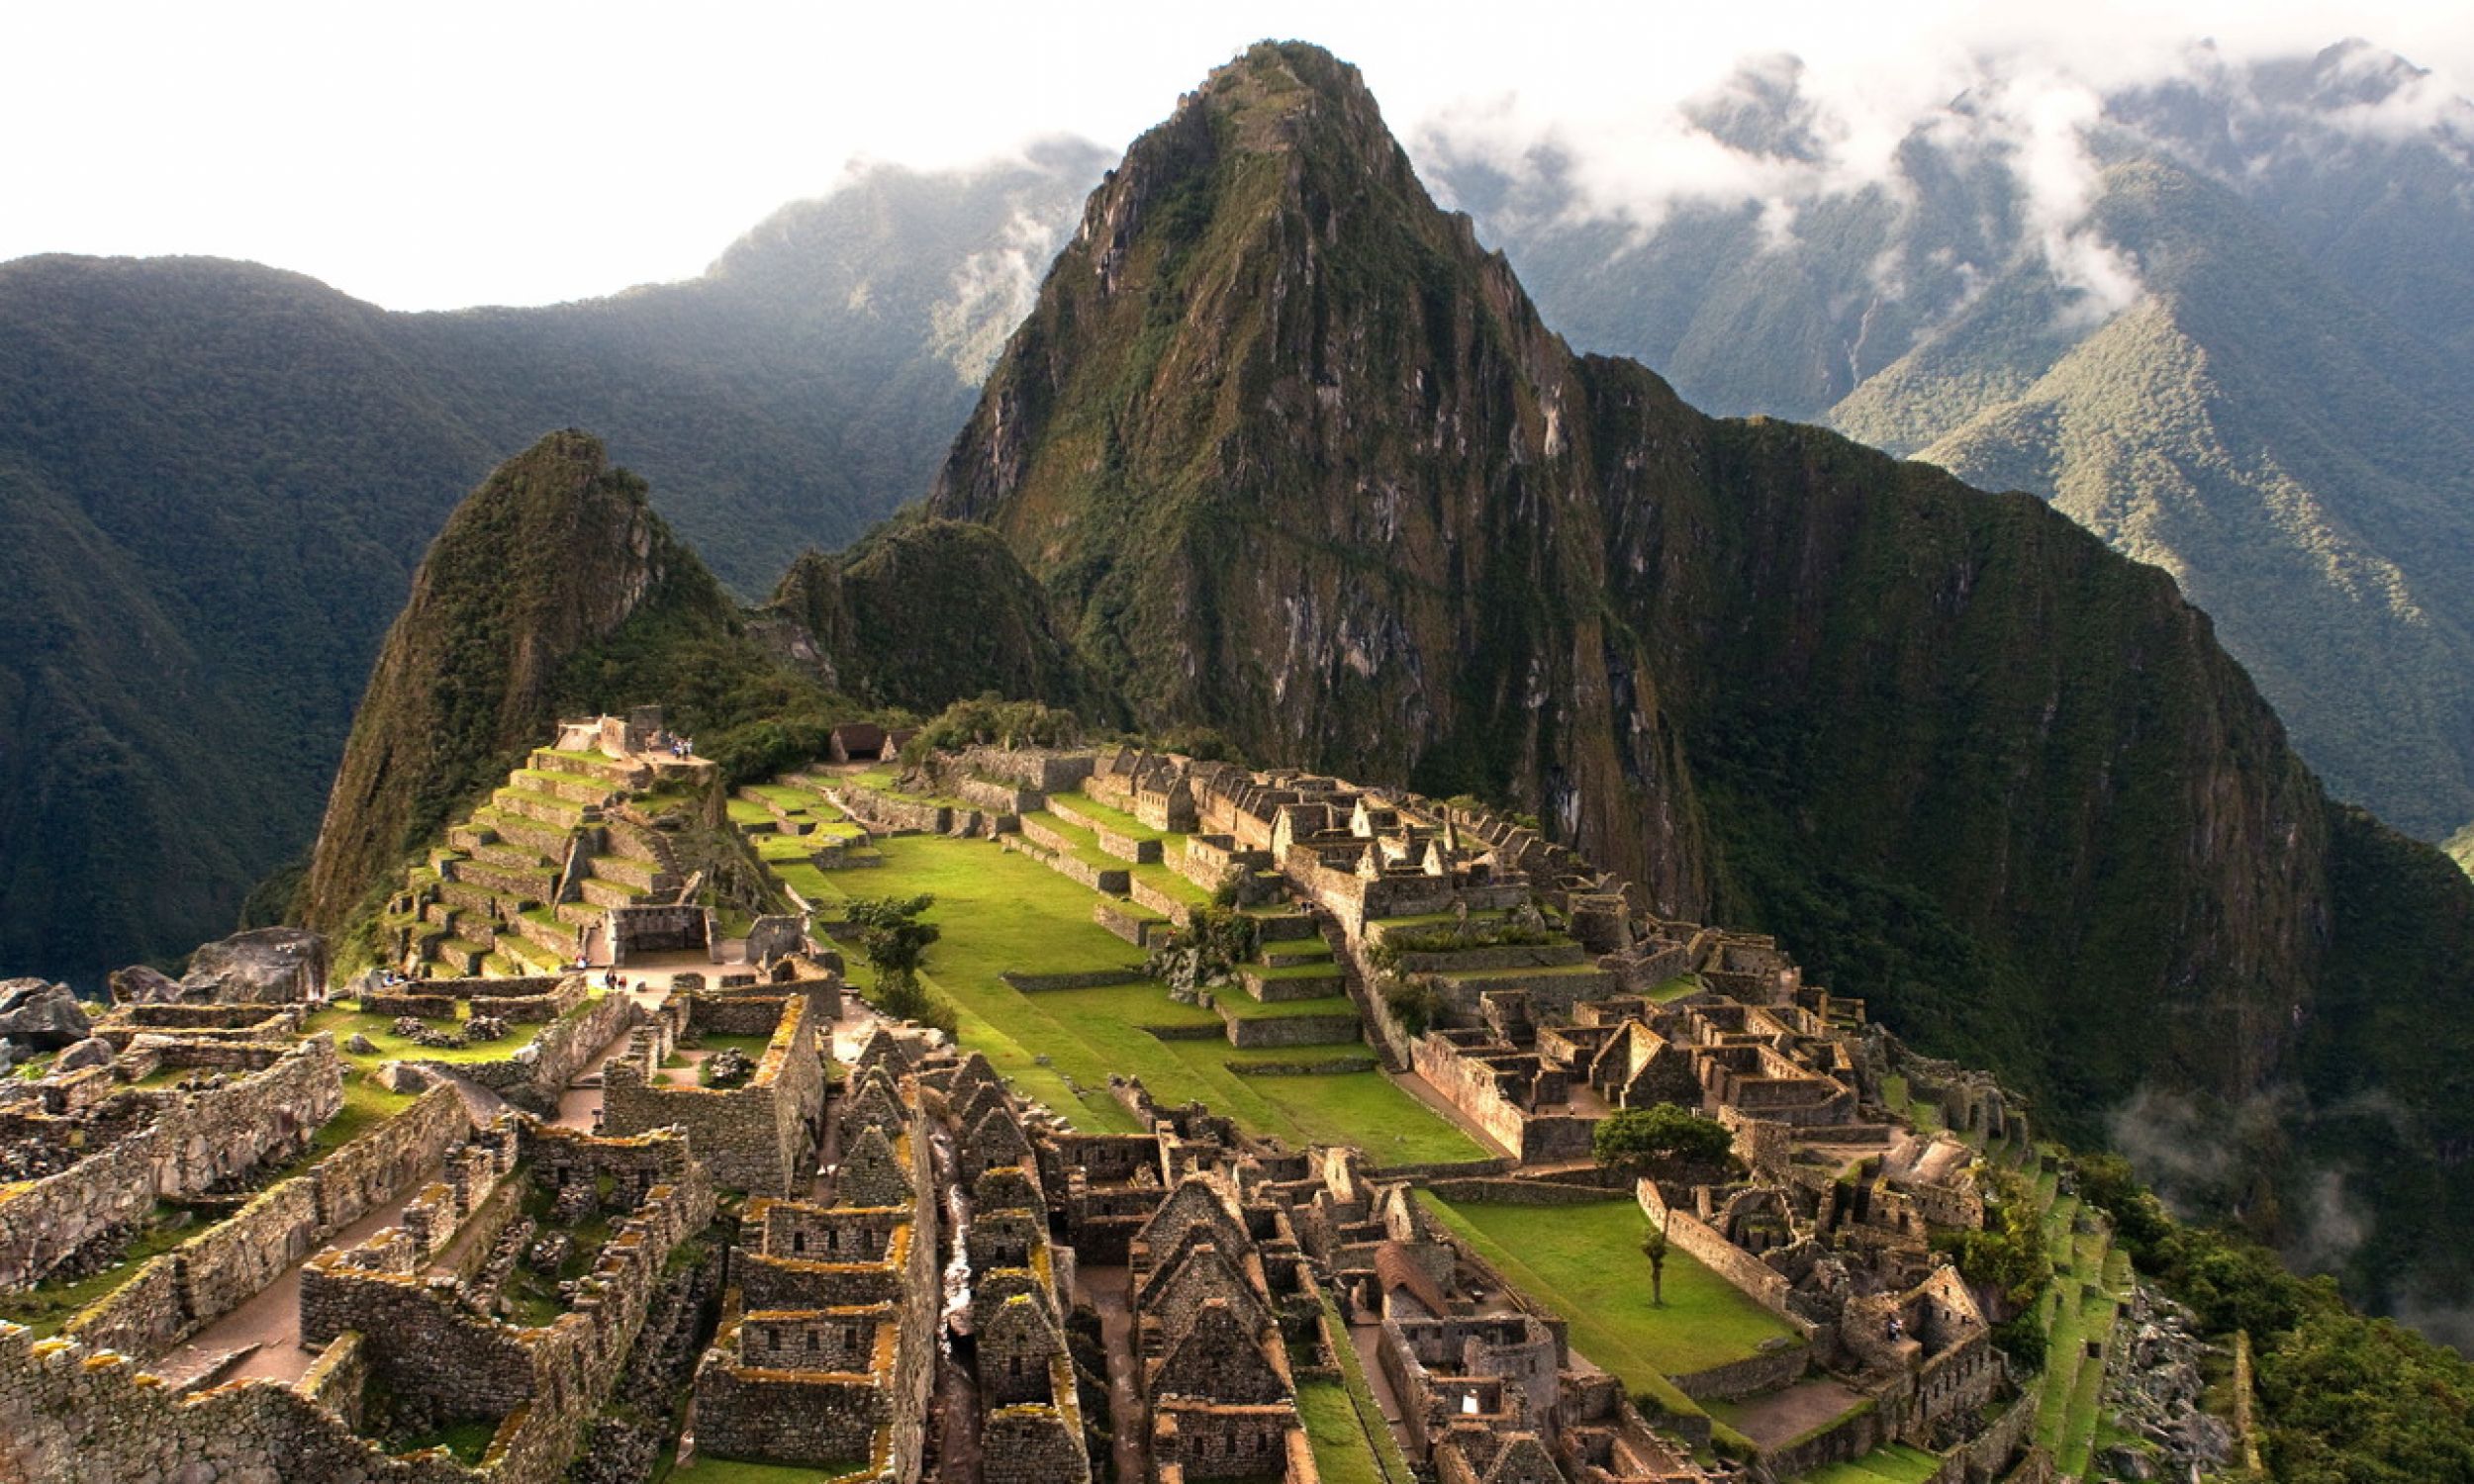 Вид на Мачу-Пікчу, місто, розташоване на висоті 2430 м над рівнем моря в Андах на території сучасного Перу, на північний захід від Куско. Територія вкрита густим чагарником. Ймовірно, це було найдивовижніше урбаністичне творіння імперії інків. Фото: PAP/Photoshot